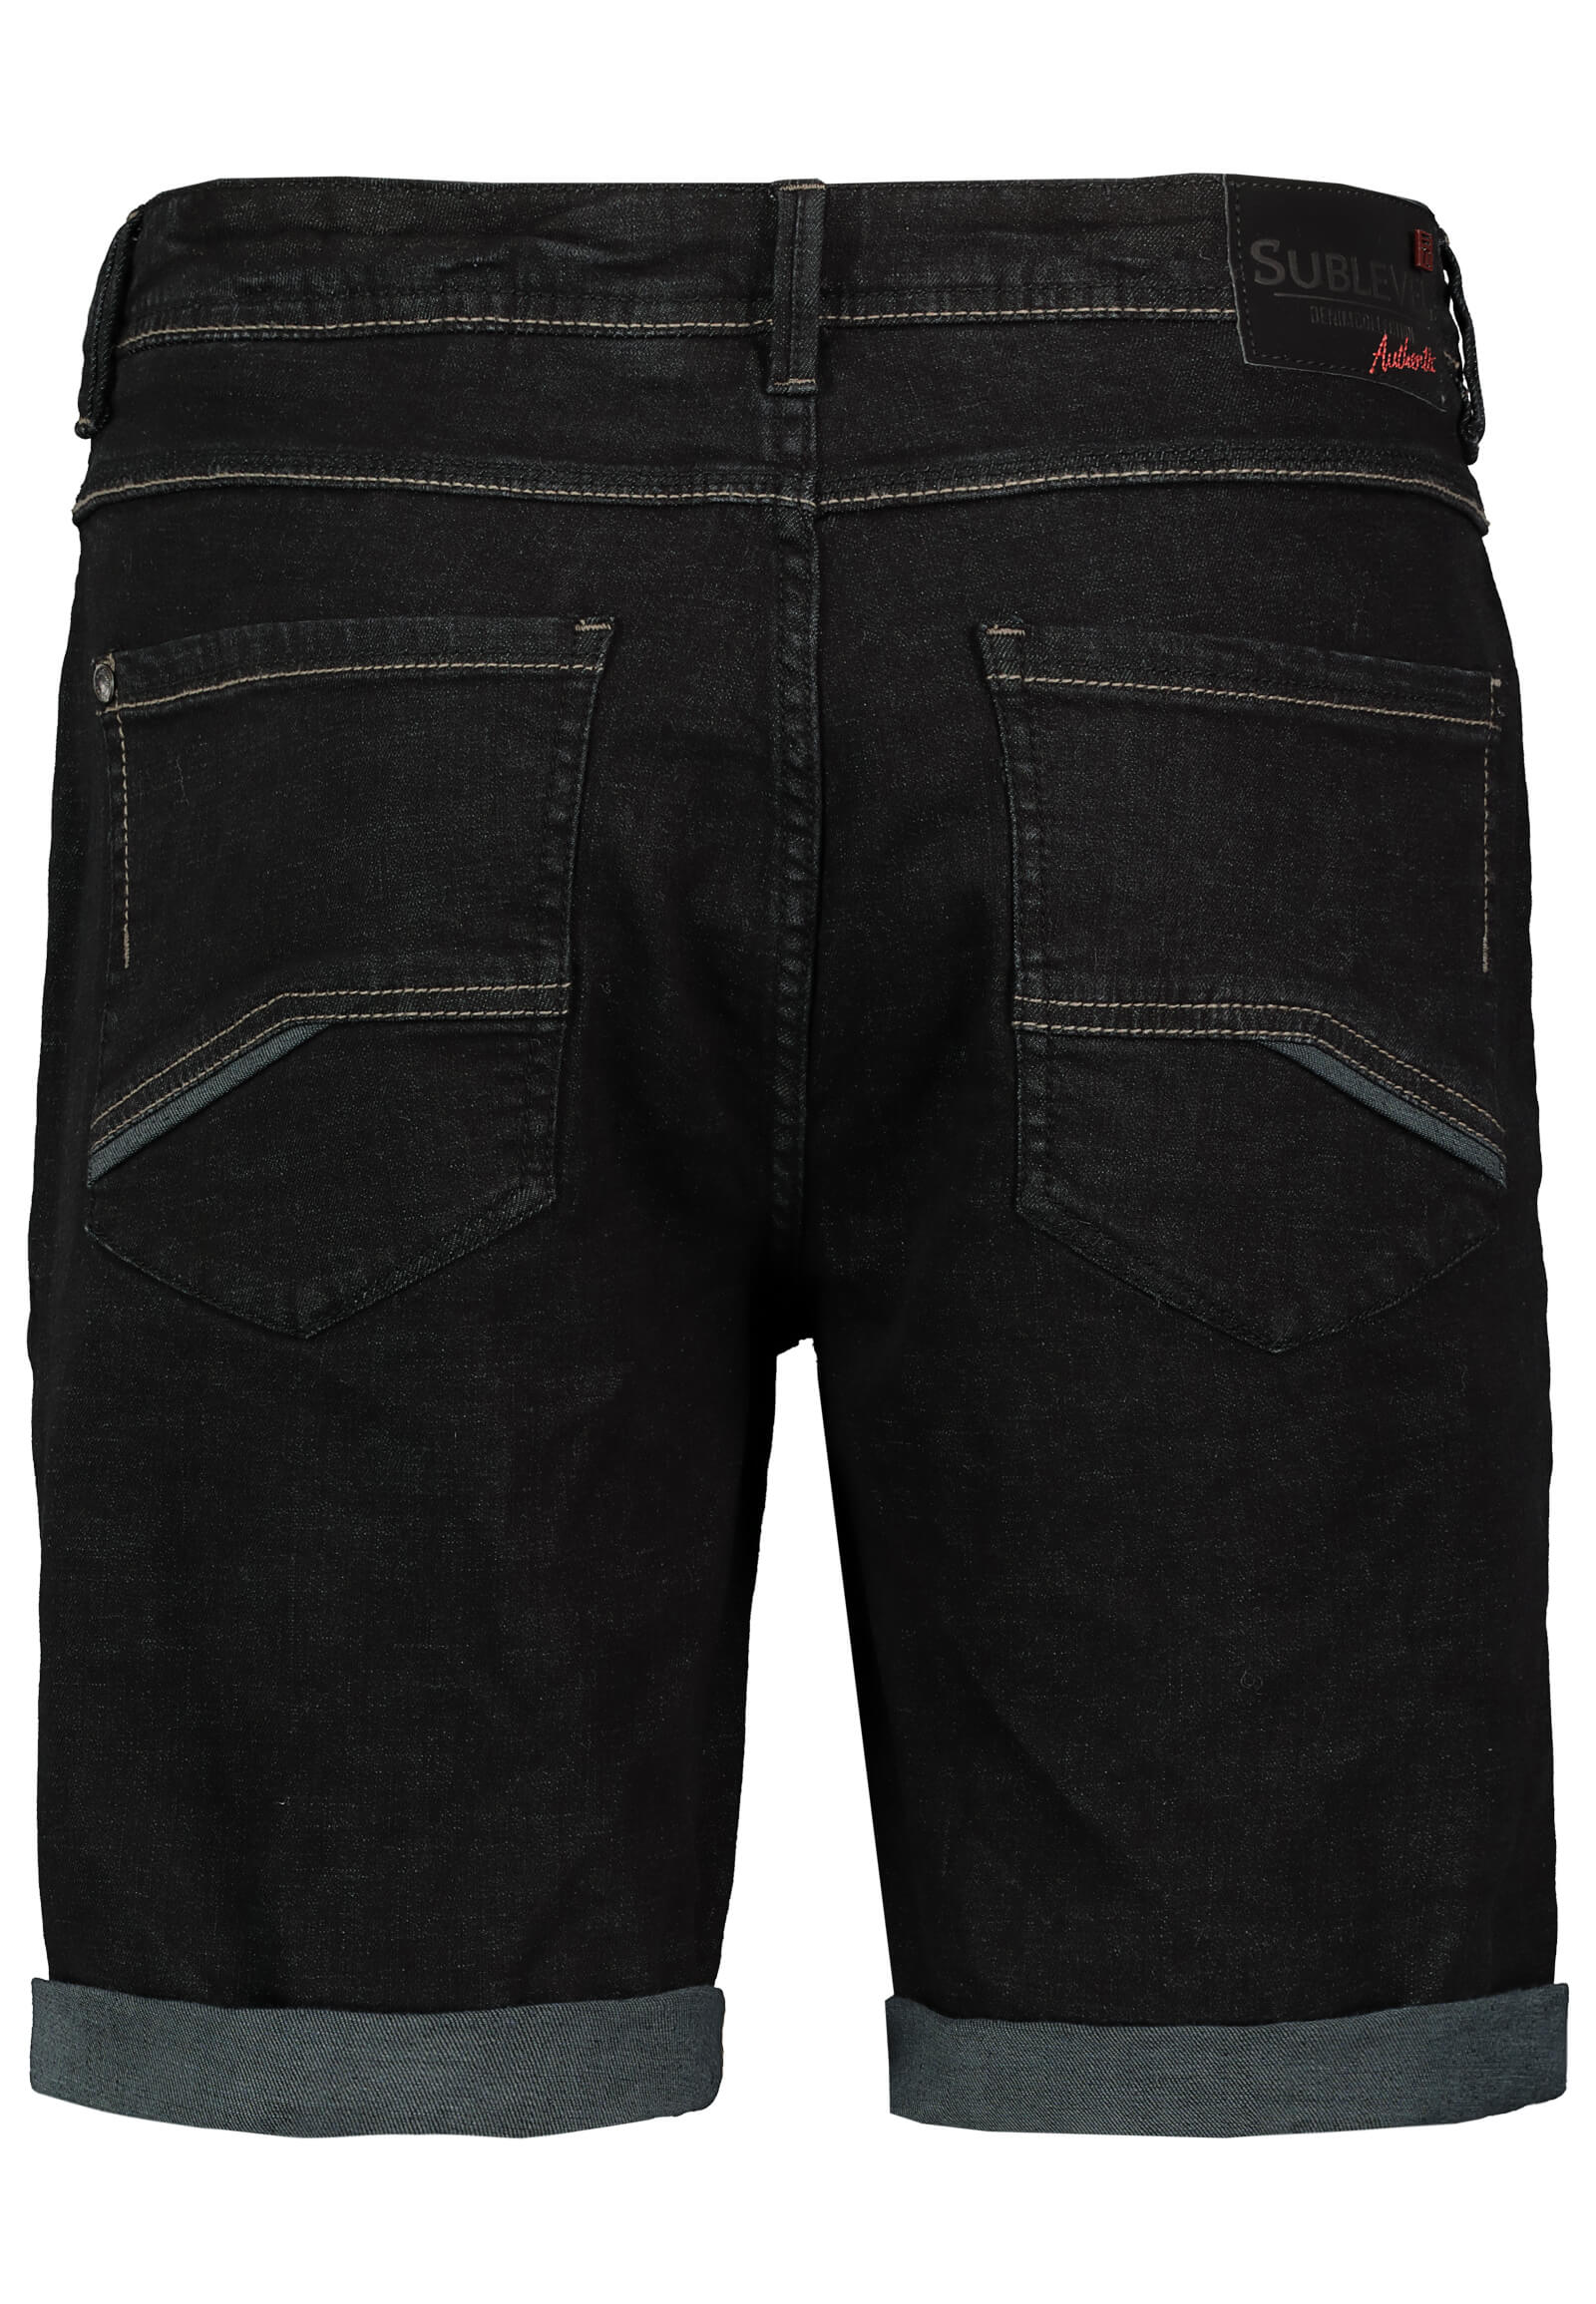 Jeans Shorts Black Denim